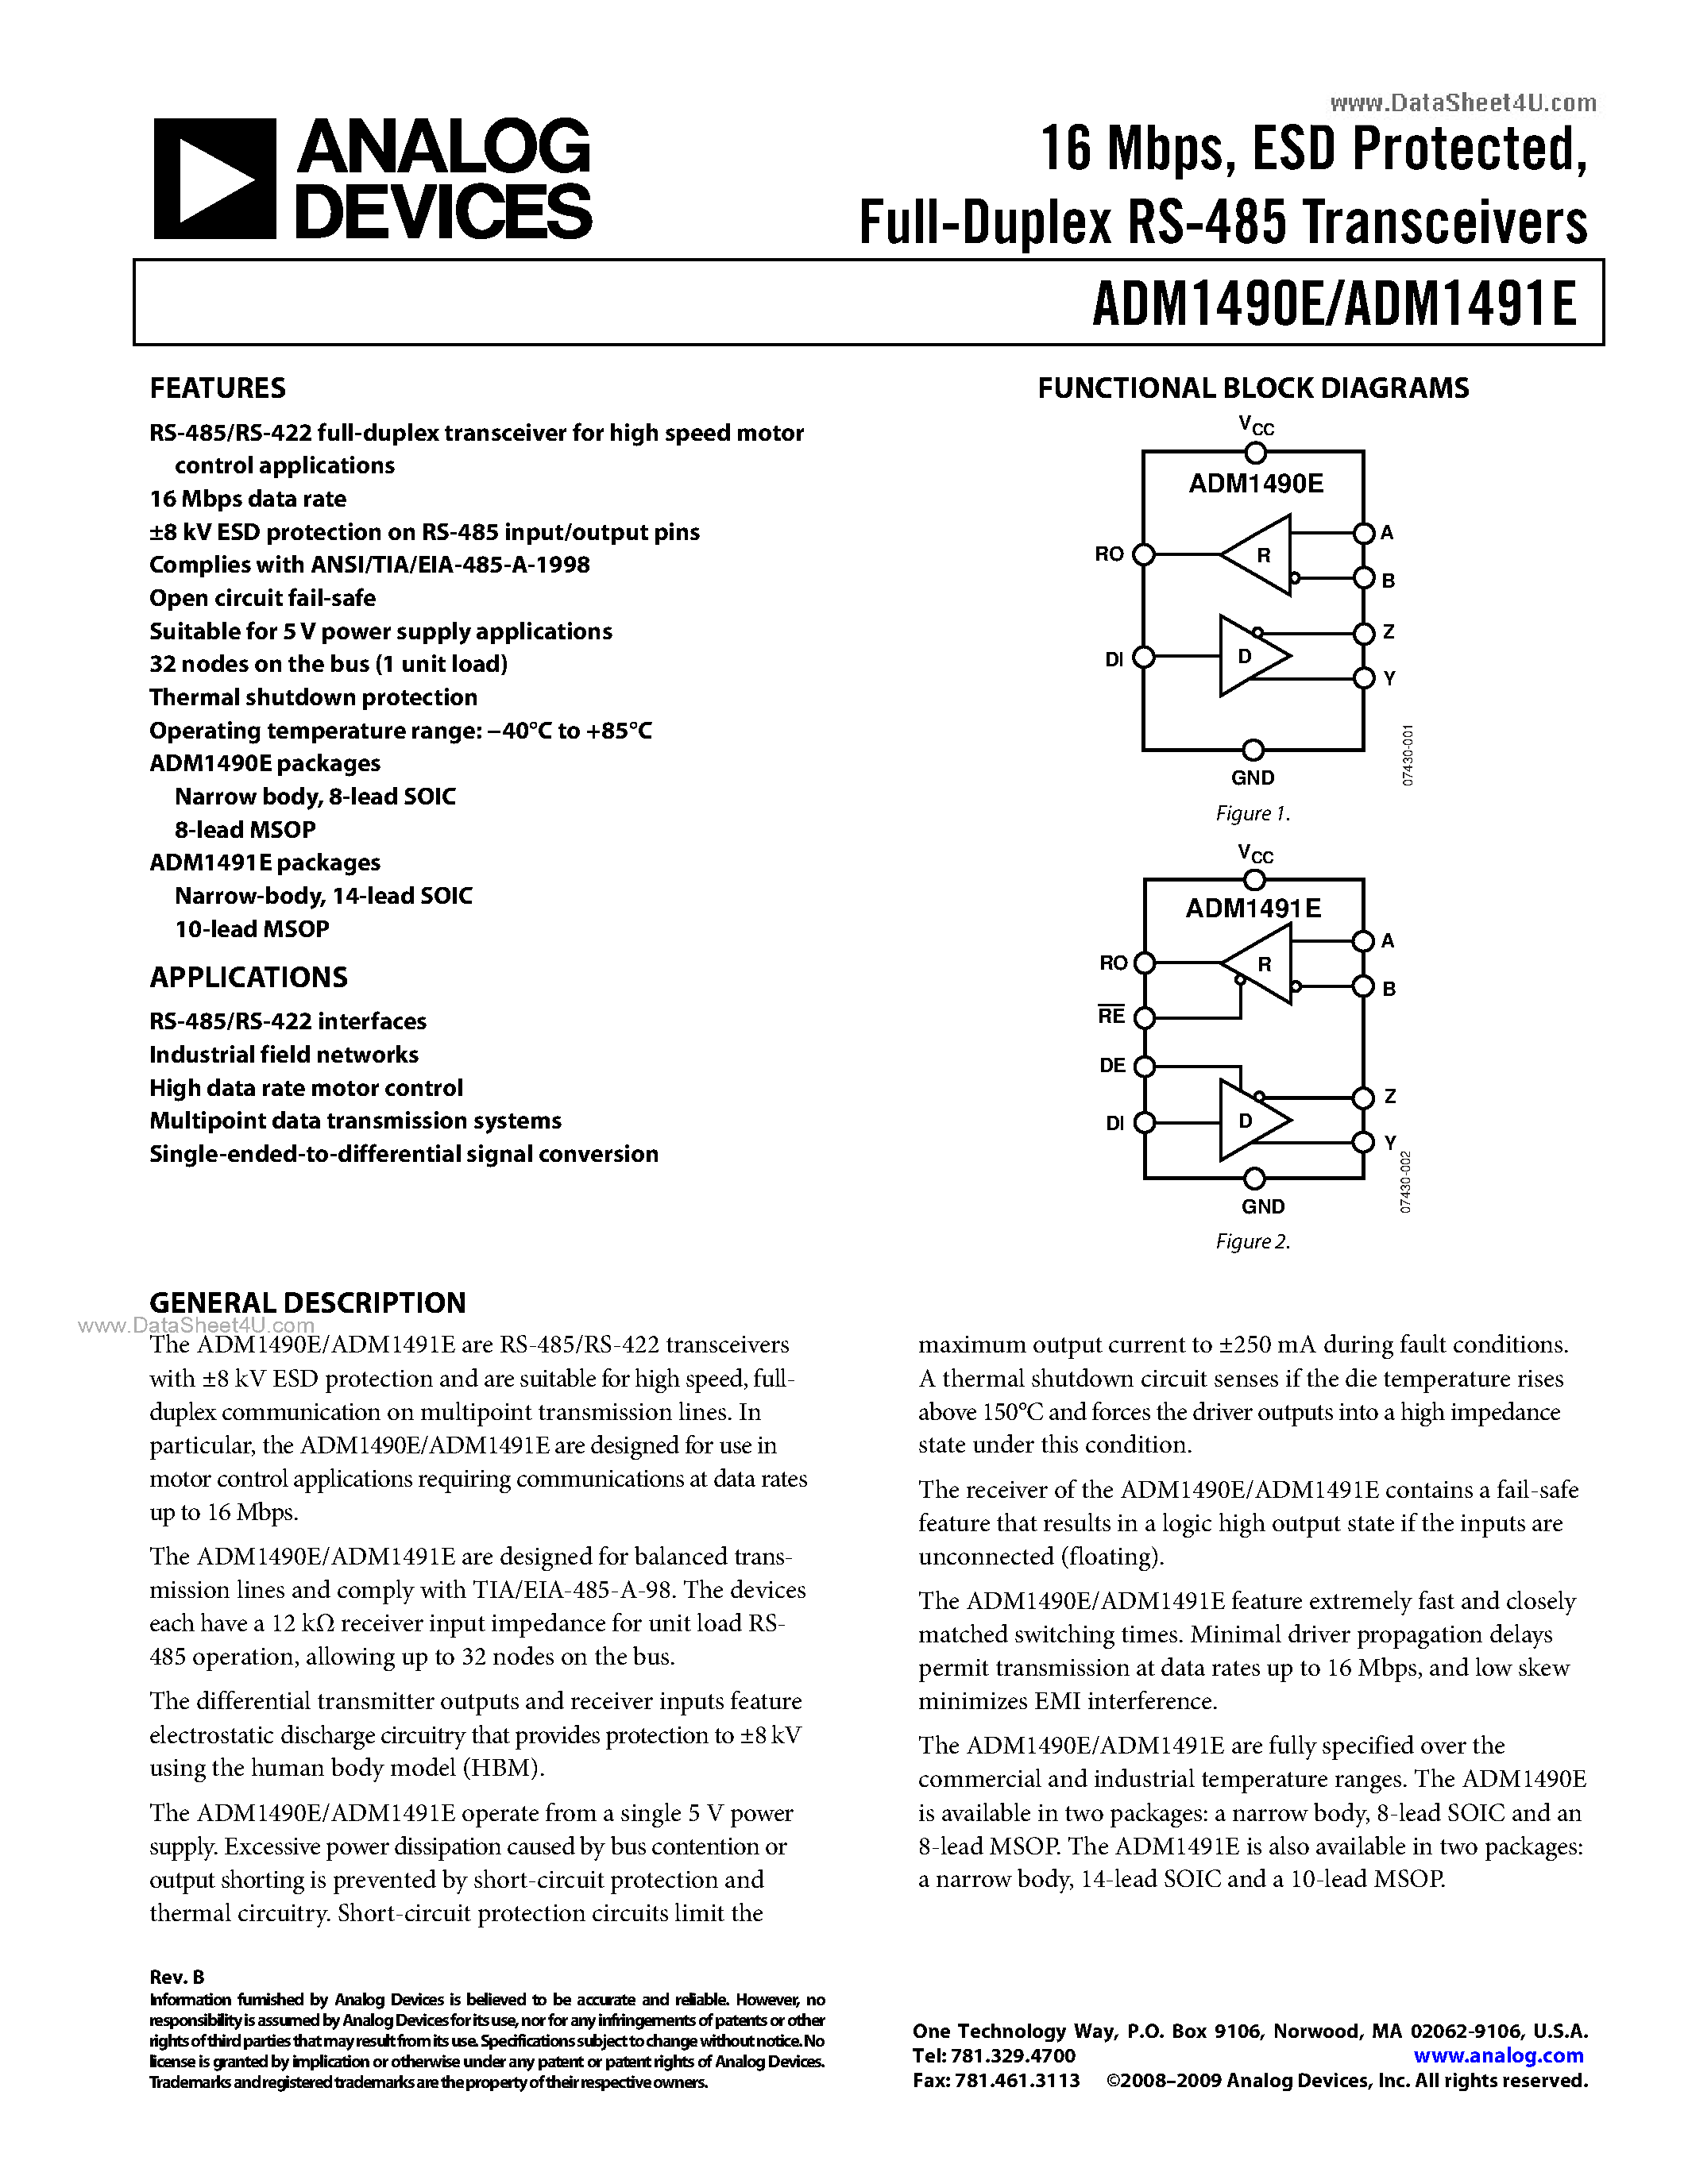 Даташит ADM1490E - (ADM1490E / ADM1491E) Full-Duplex RS-485 Transceivers страница 1